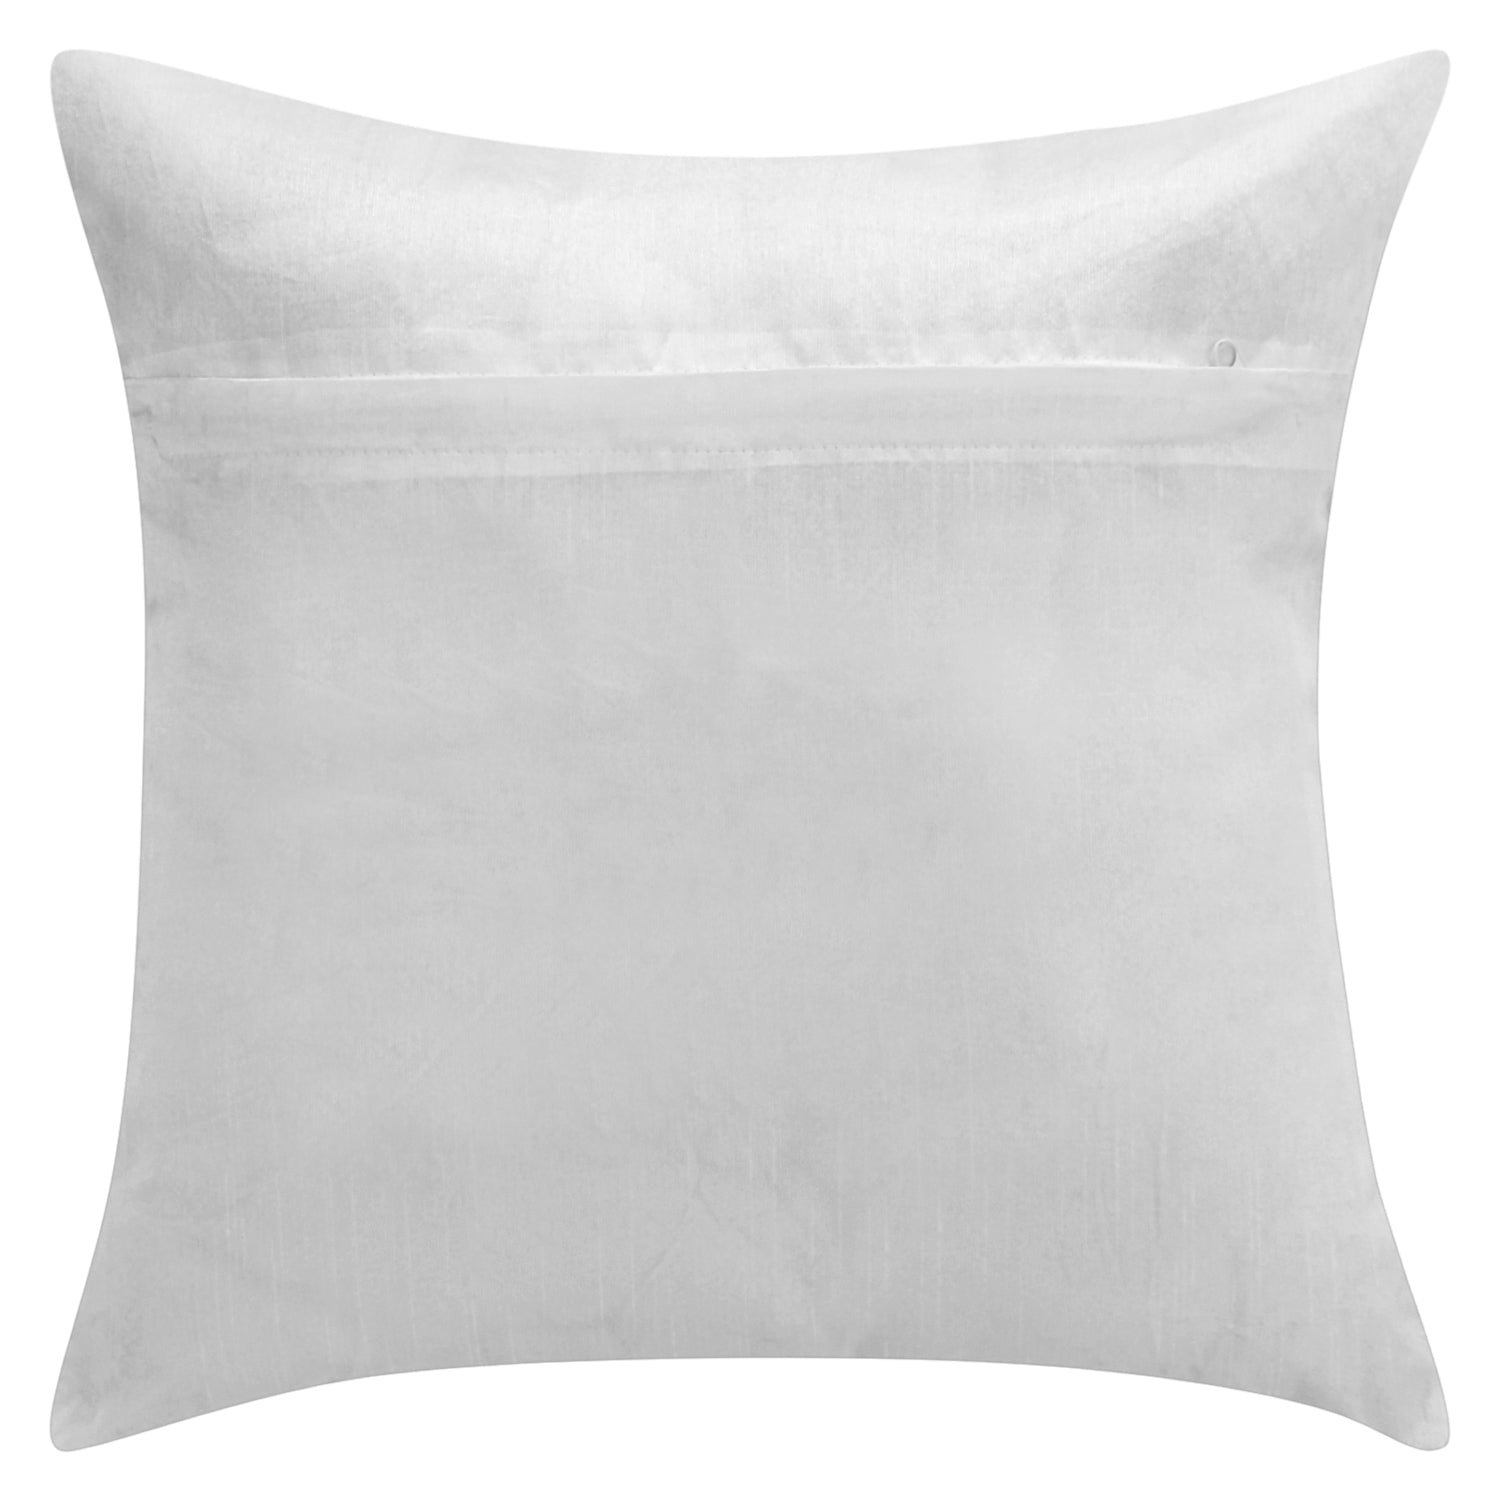 Desi Kapda 3D Printed Cushions & Pillows Cover